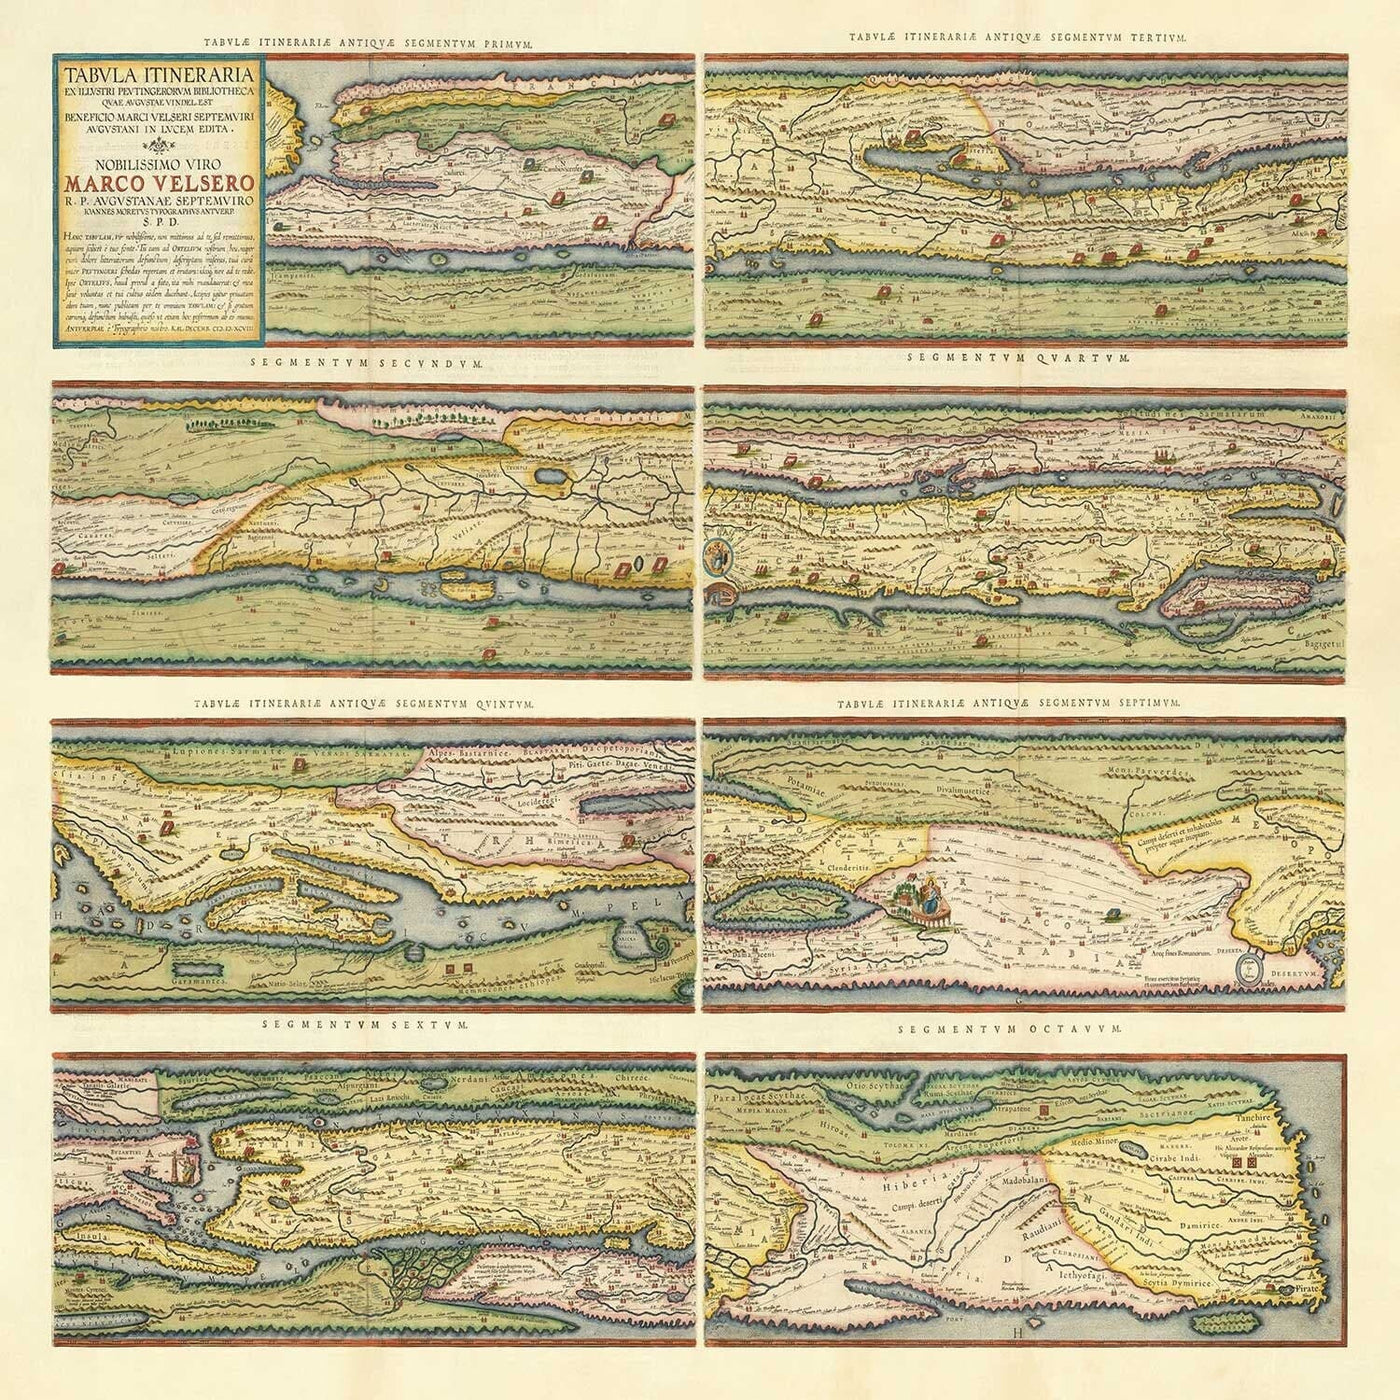 Old Map of Roman Empire Roads, 1624 by Ortelius & Peutinger - Cursus Publicus, Rome, Europe, Caesar Augustus